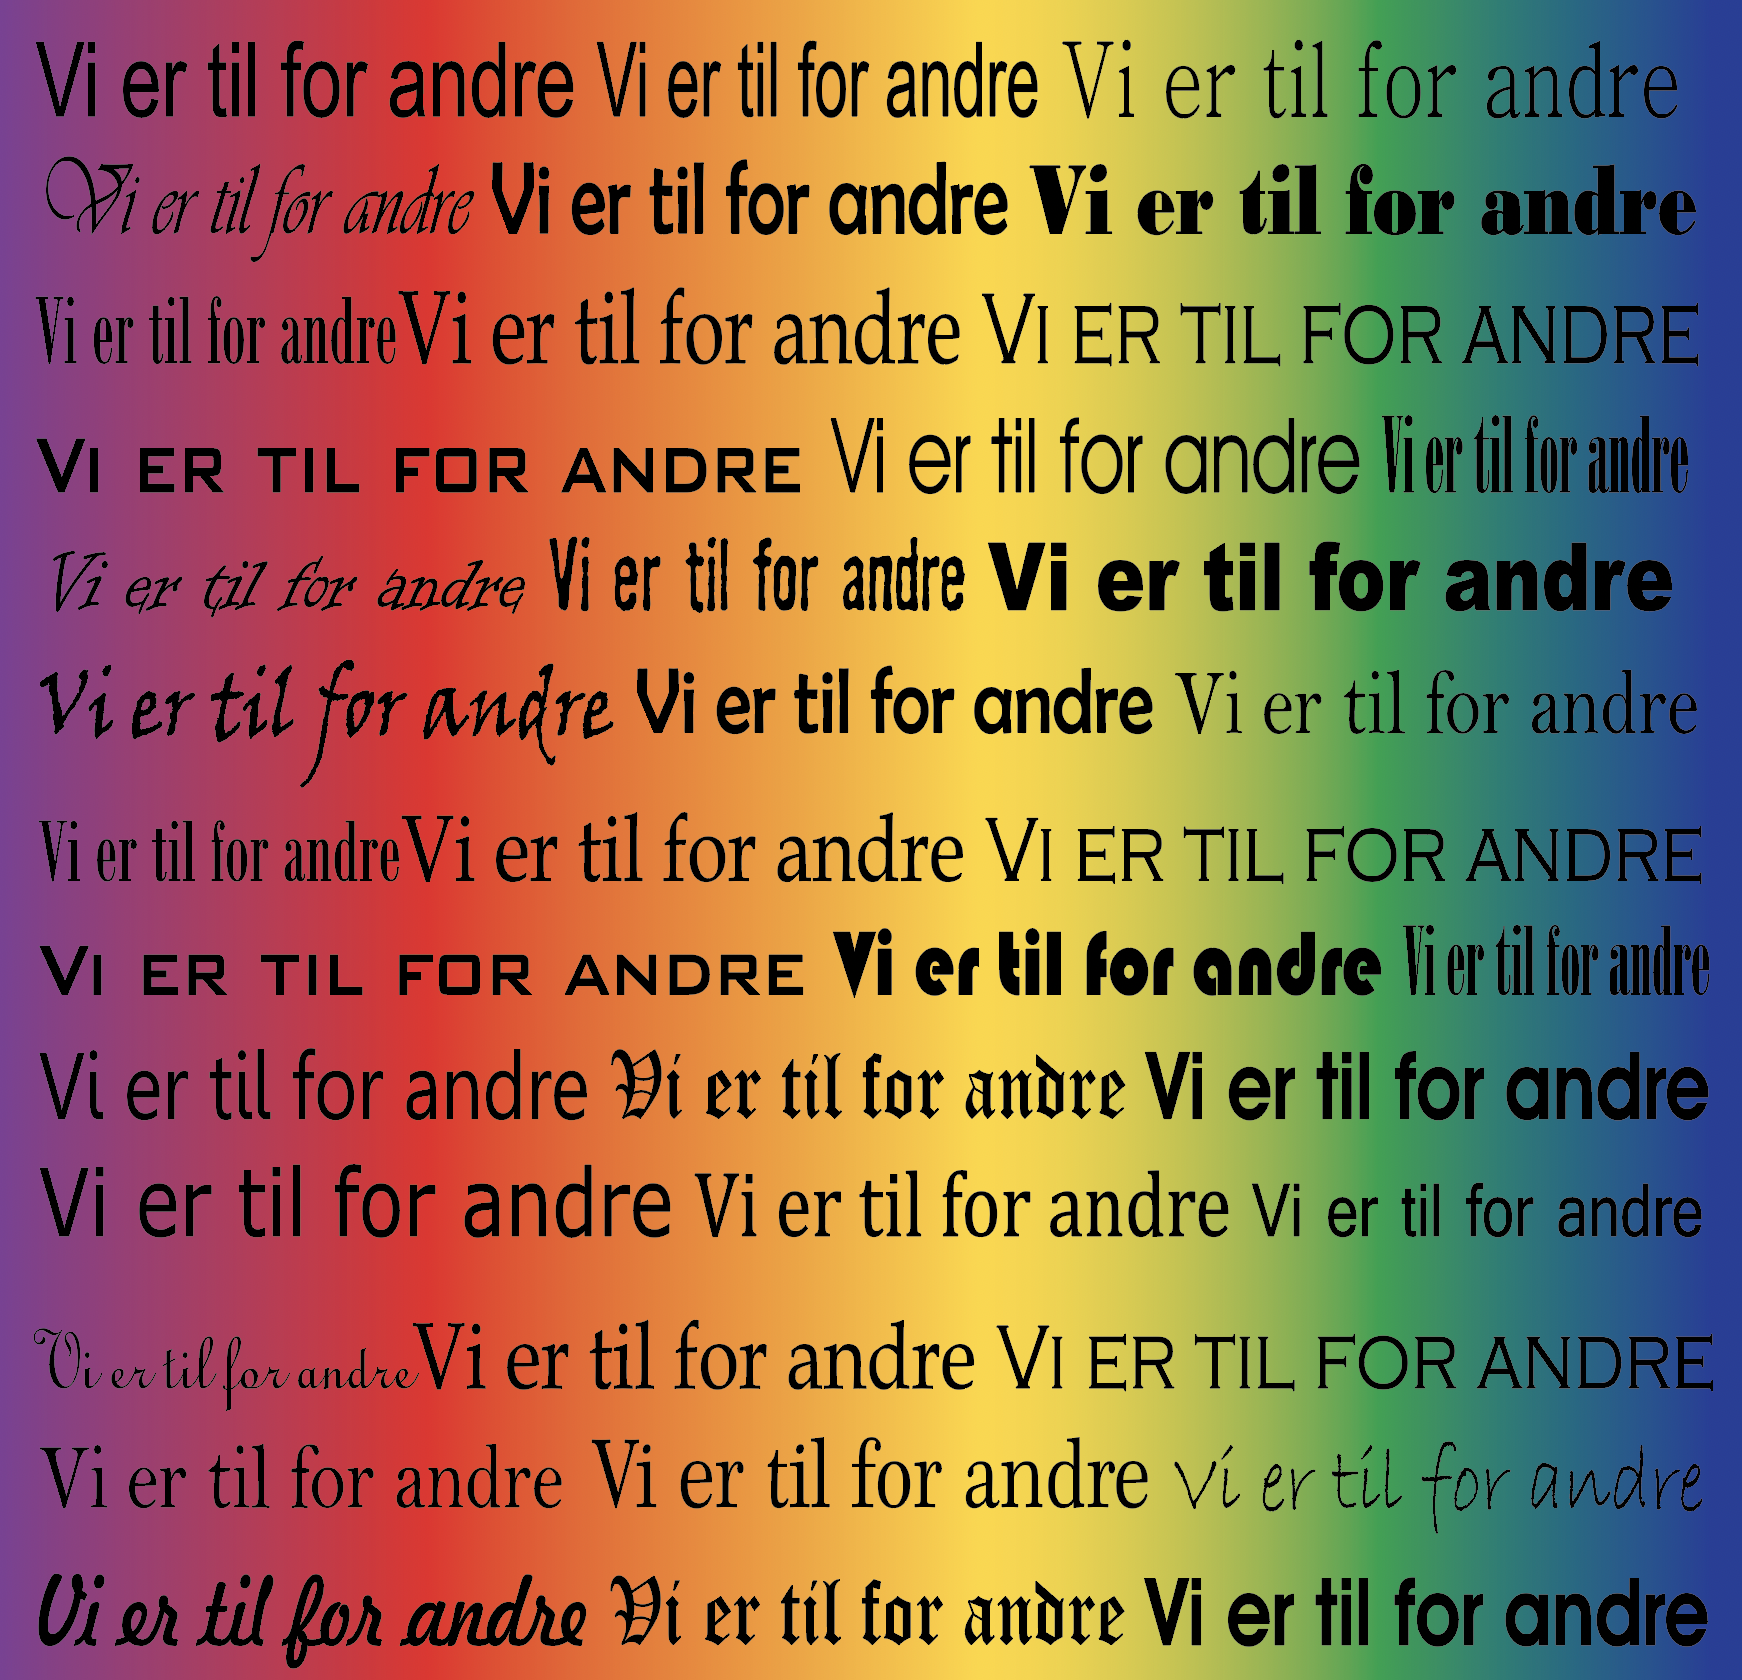 Teksten "vi er til for andre" er gjentatt over hele bildet med forskjellige bokstavtyper. Bokstavene er svarte og bakgrunnen går i regnbuens farger.